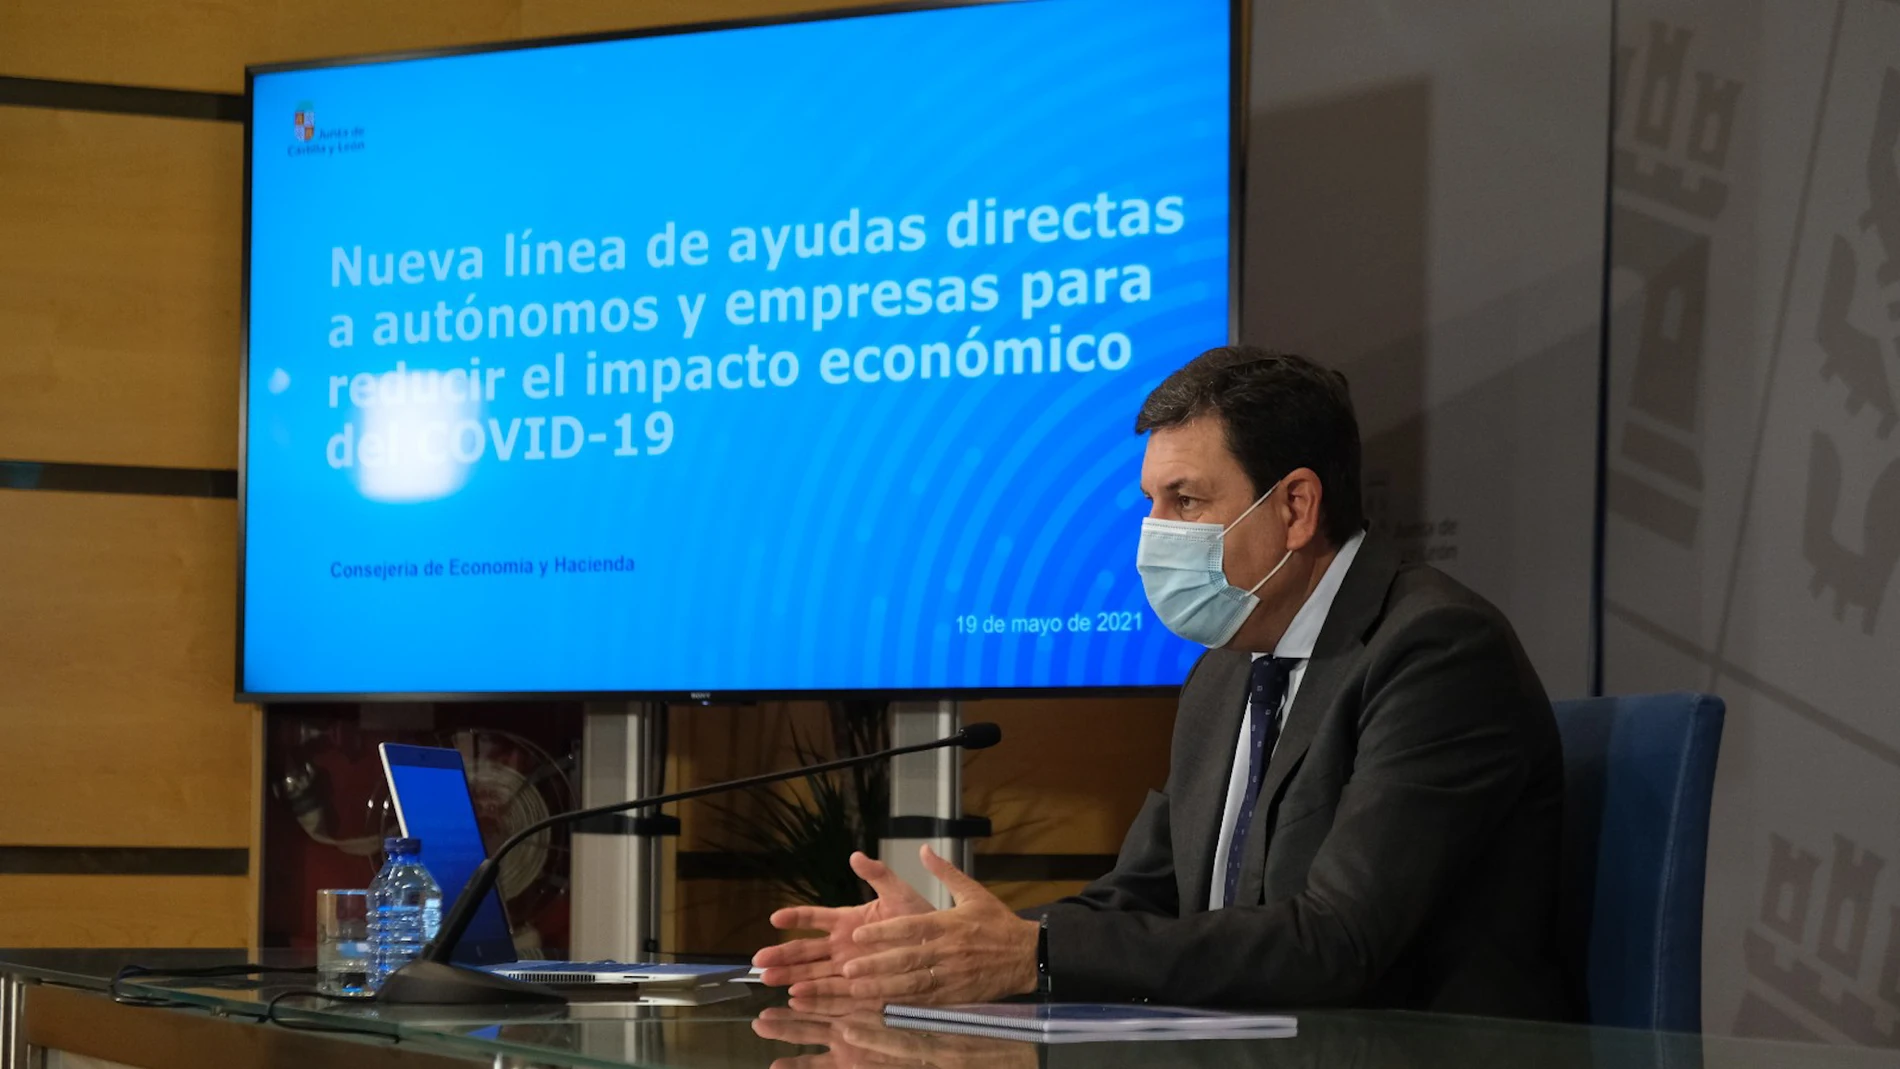 El consejero de Economía y Hacienda, Carlos Fernández Carriedo, presenta las nuevas líneas